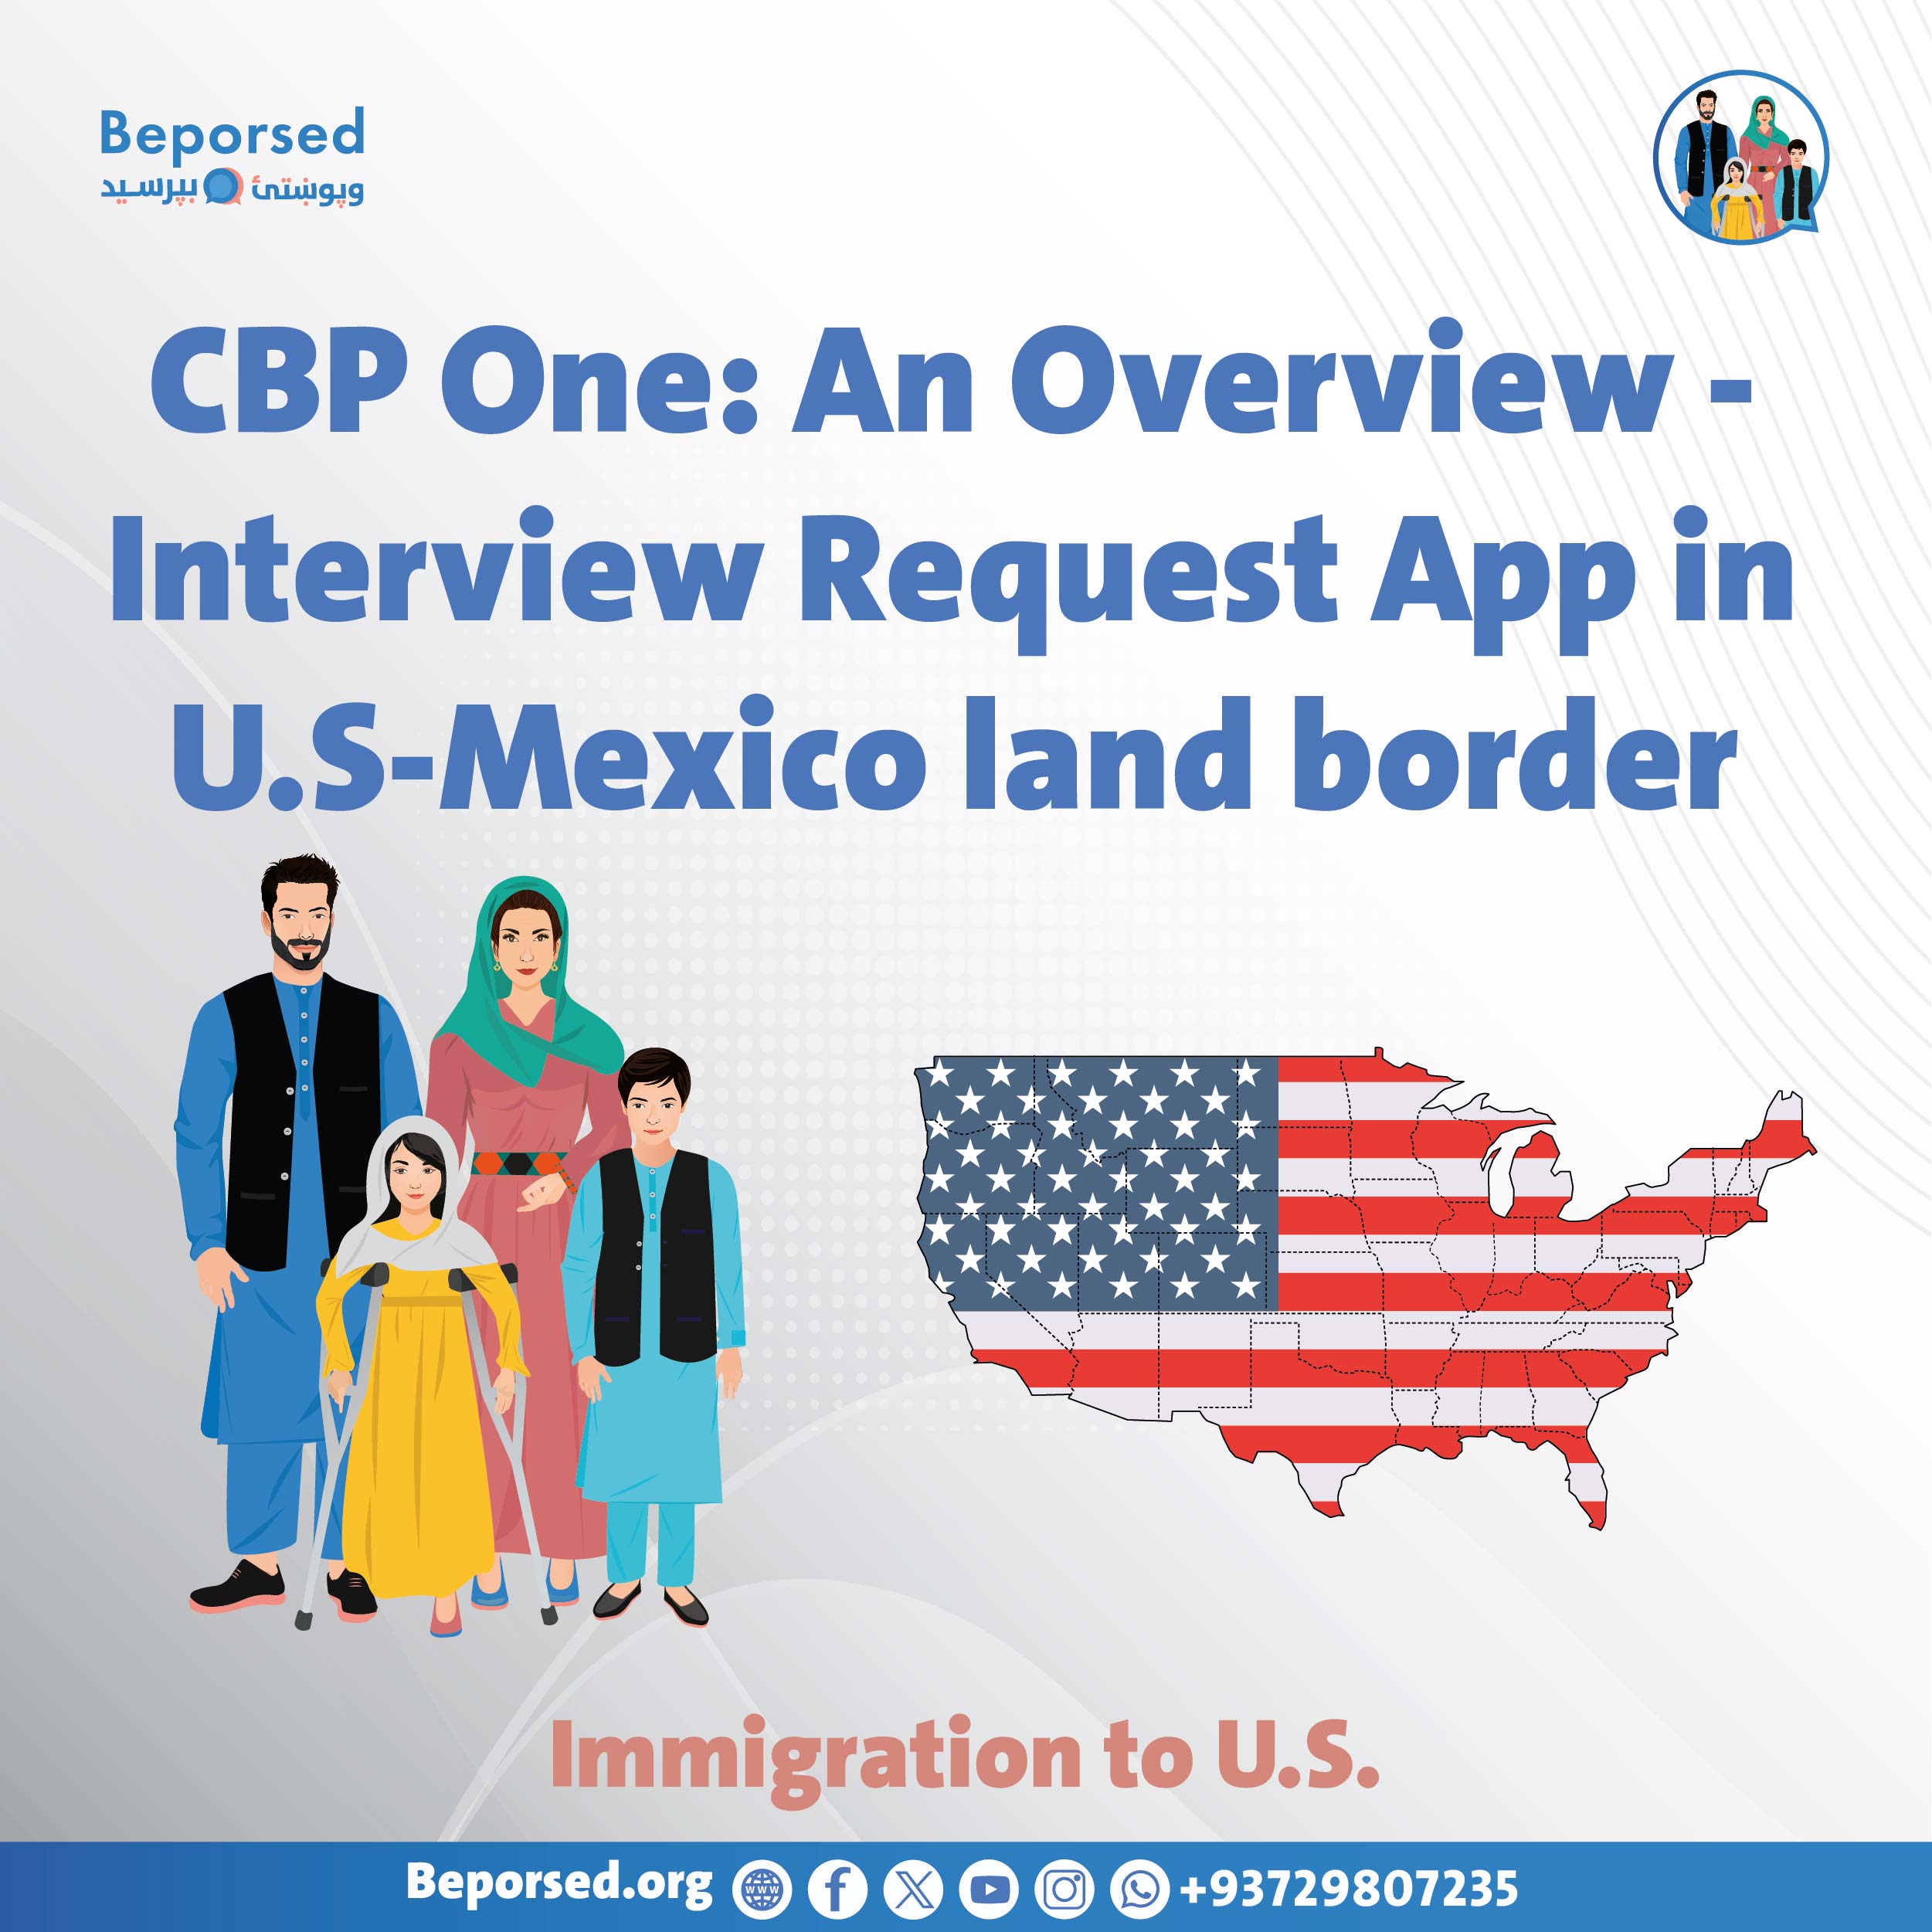 مروری بر CBP One - اپلیکیشن برای درخواست مصاحبه در مرز ایالات متحده و مکسیکو-03.jpg